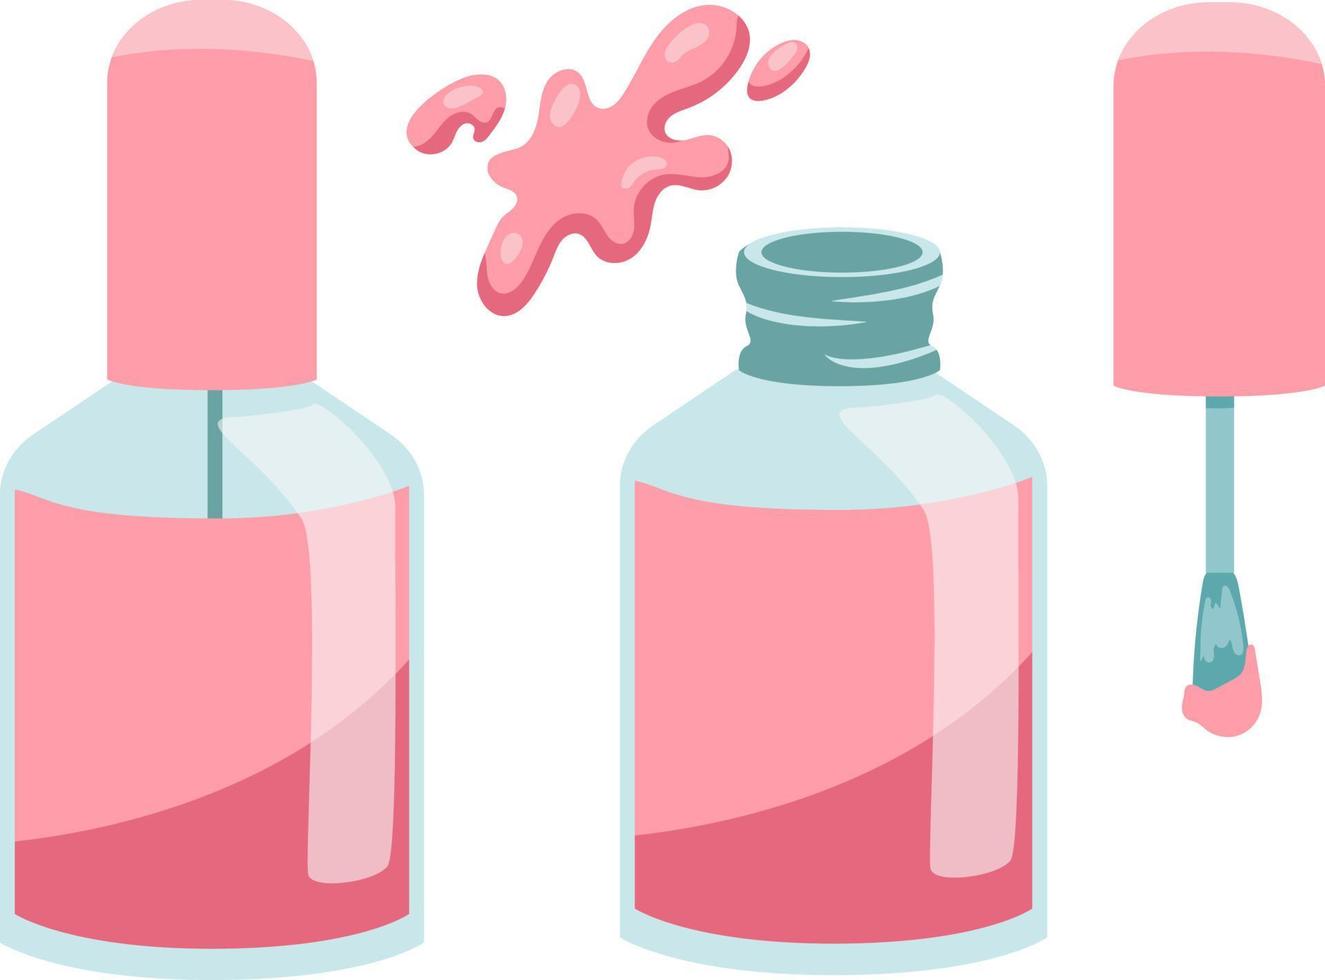 conjunto de esmalte de uñas rosa manicura. botella de esmalte de uñas y cepillo aislado en estilo plano de fondo blanco vector